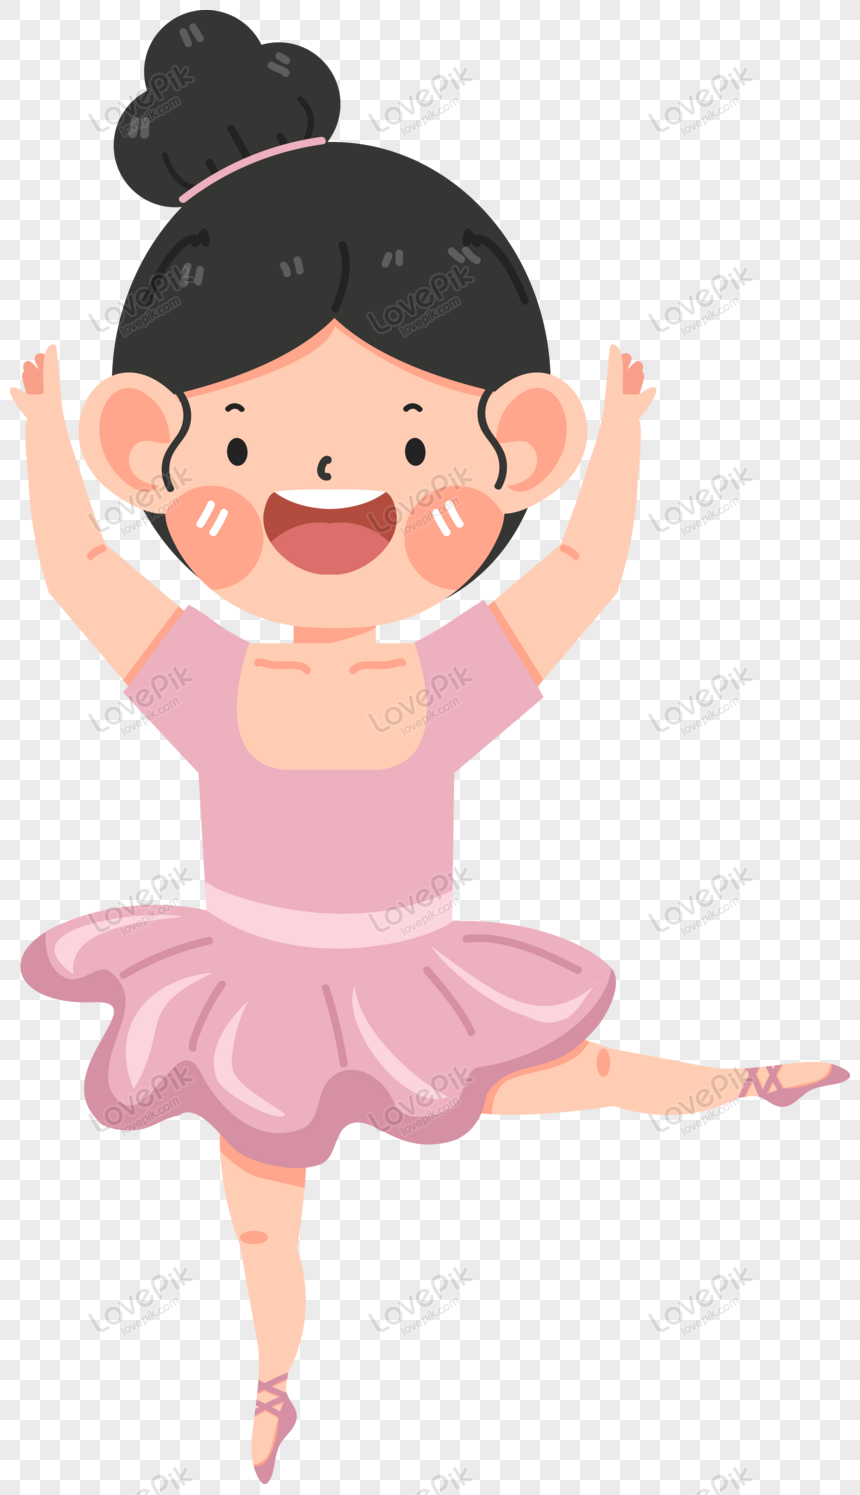 Linda Garota Bailarina Dançando Em Vestido Rosa PNG Imagens Gratuitas Para  Download - Lovepik